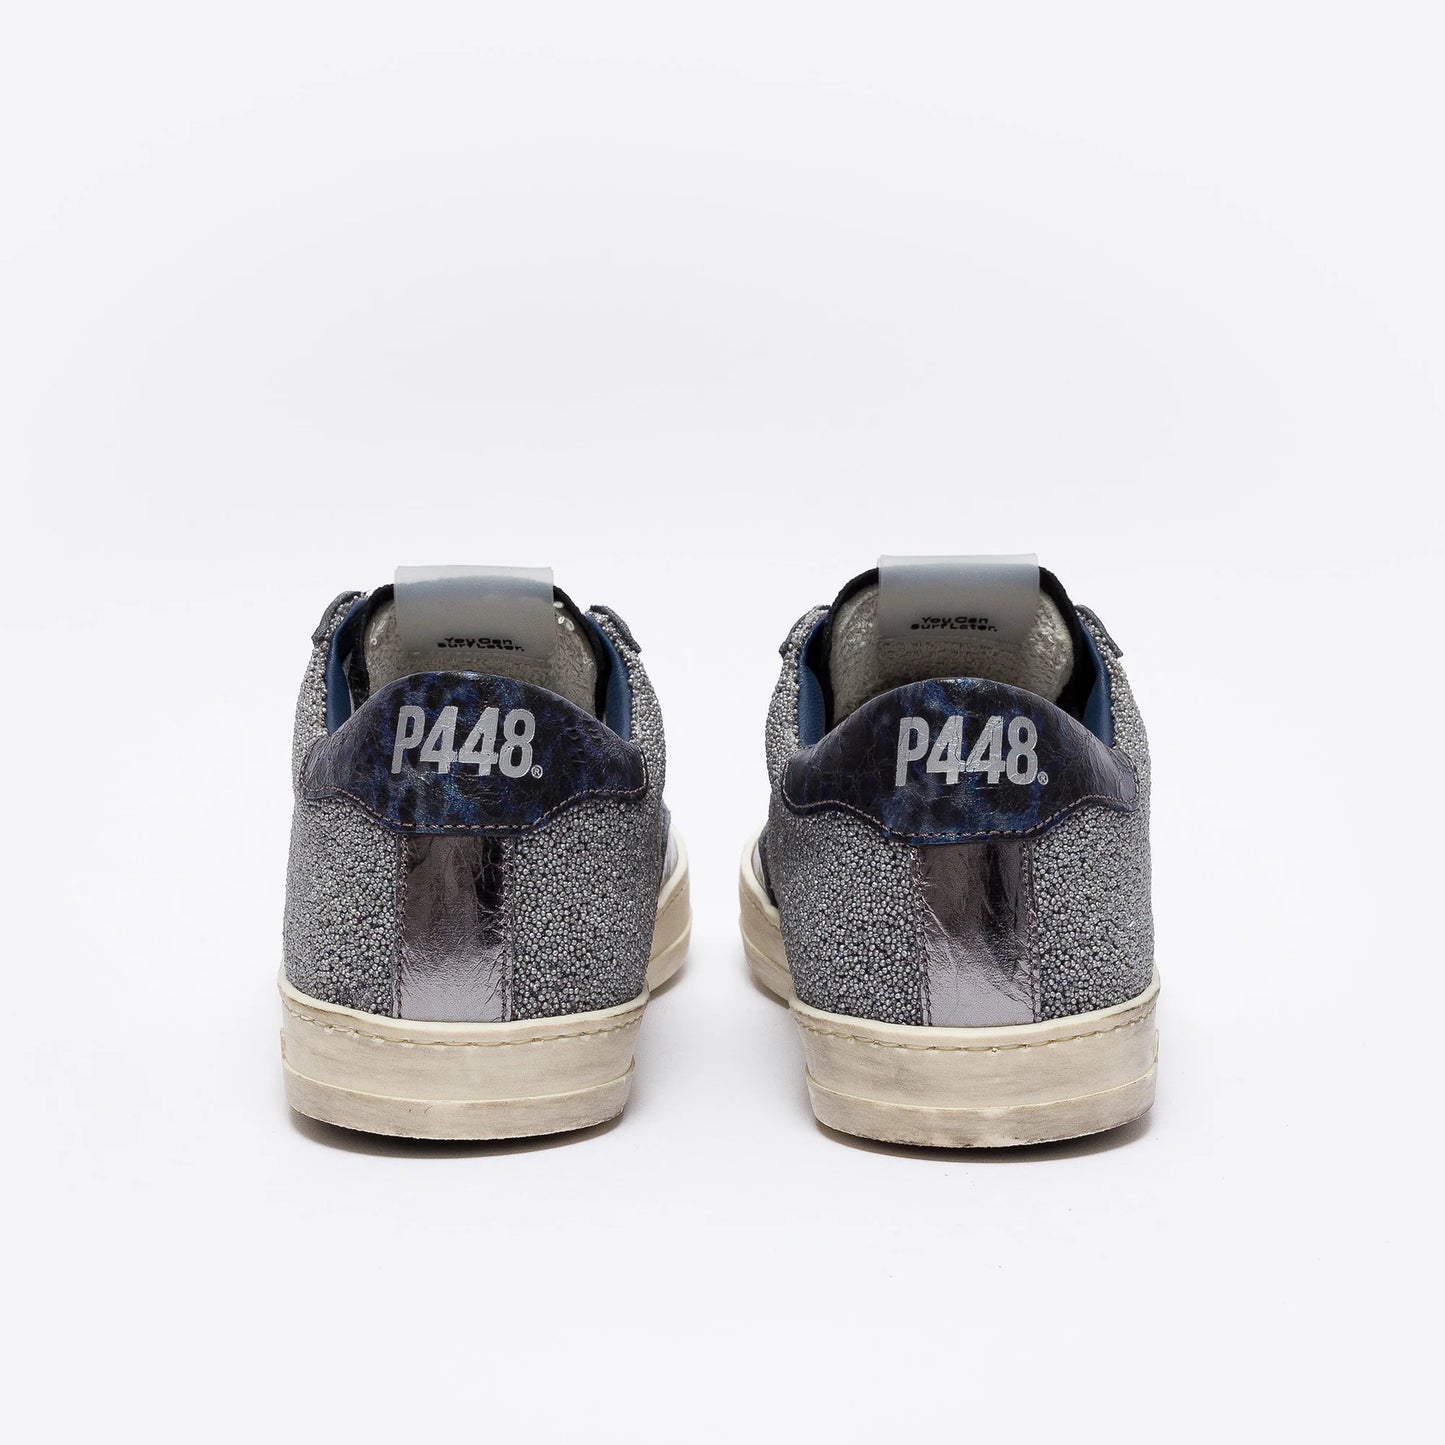 
                  
                    P448 John sneakers
                  
                